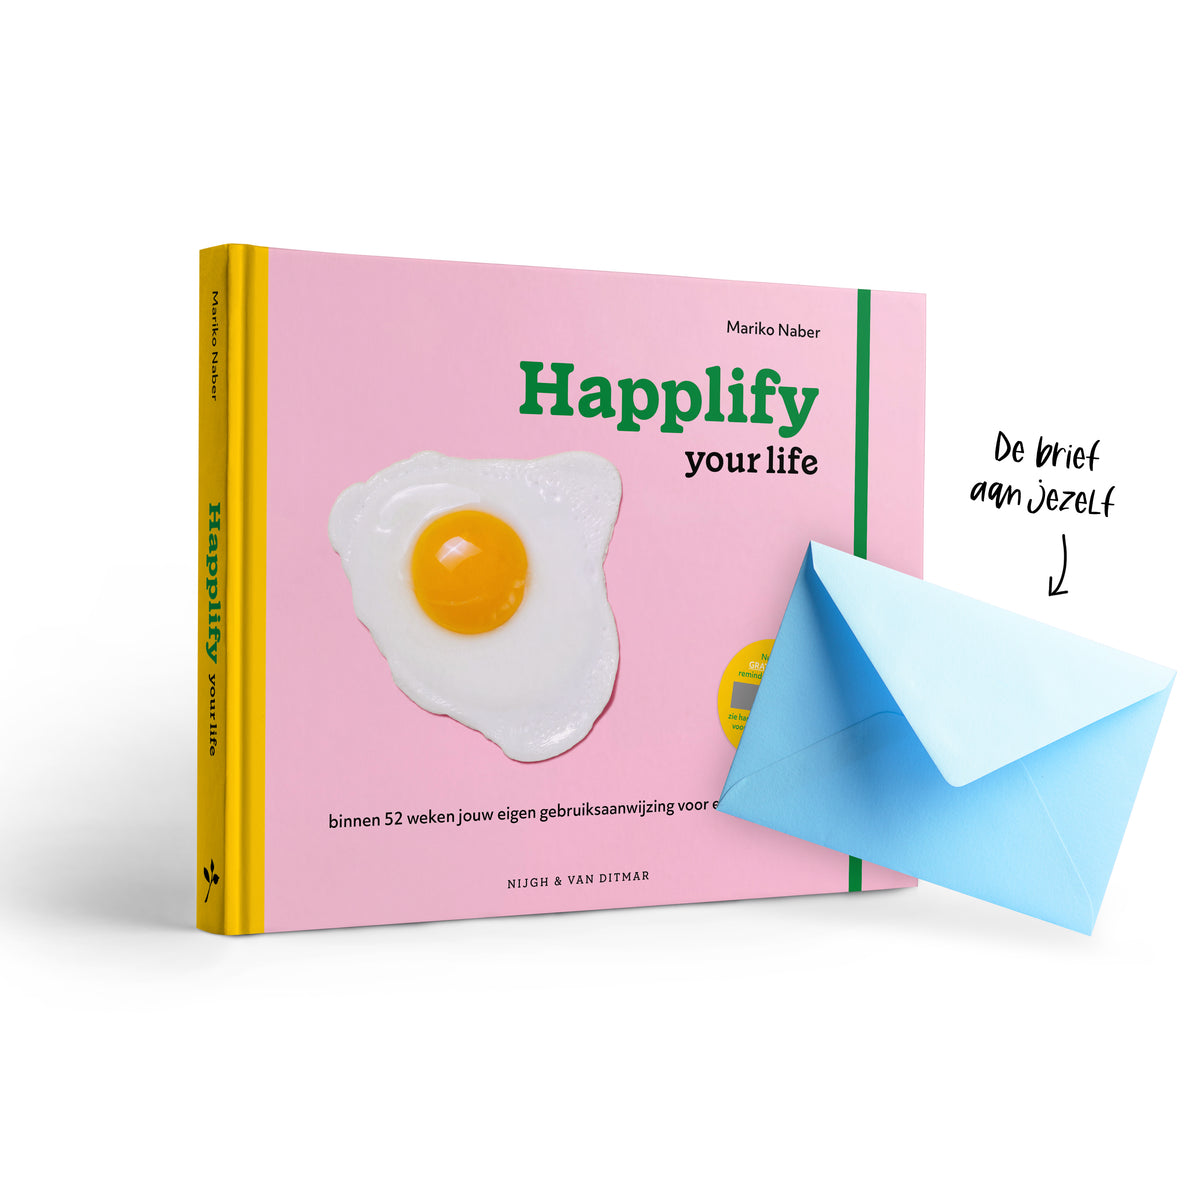 Happlify your life - Brief aan jezelf - Happlify